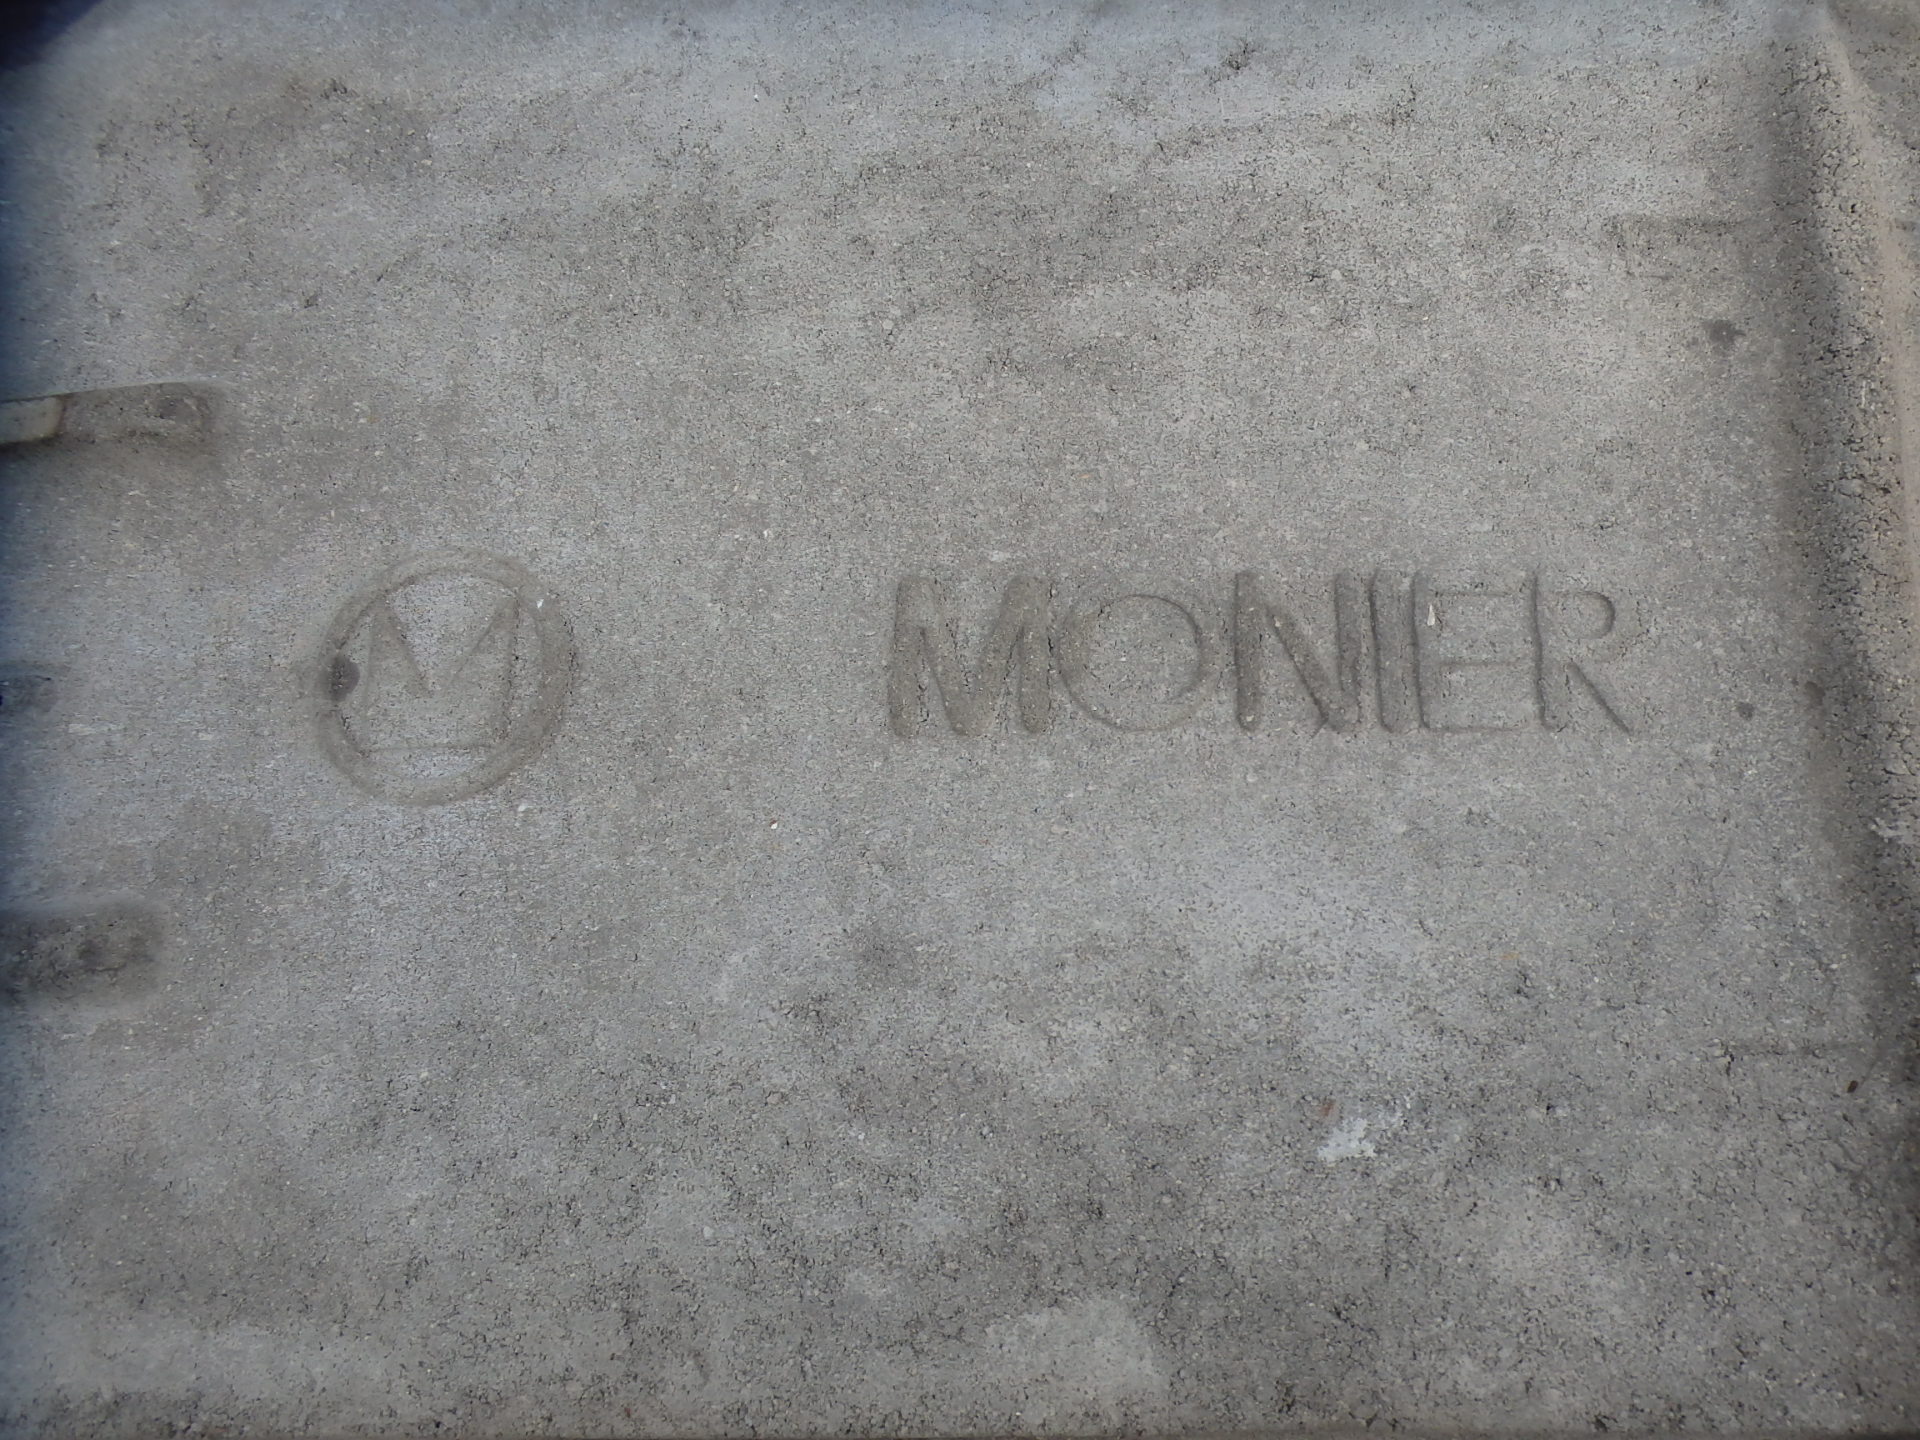 菰野町モニエル瓦の裏面にMONIERのロゴ